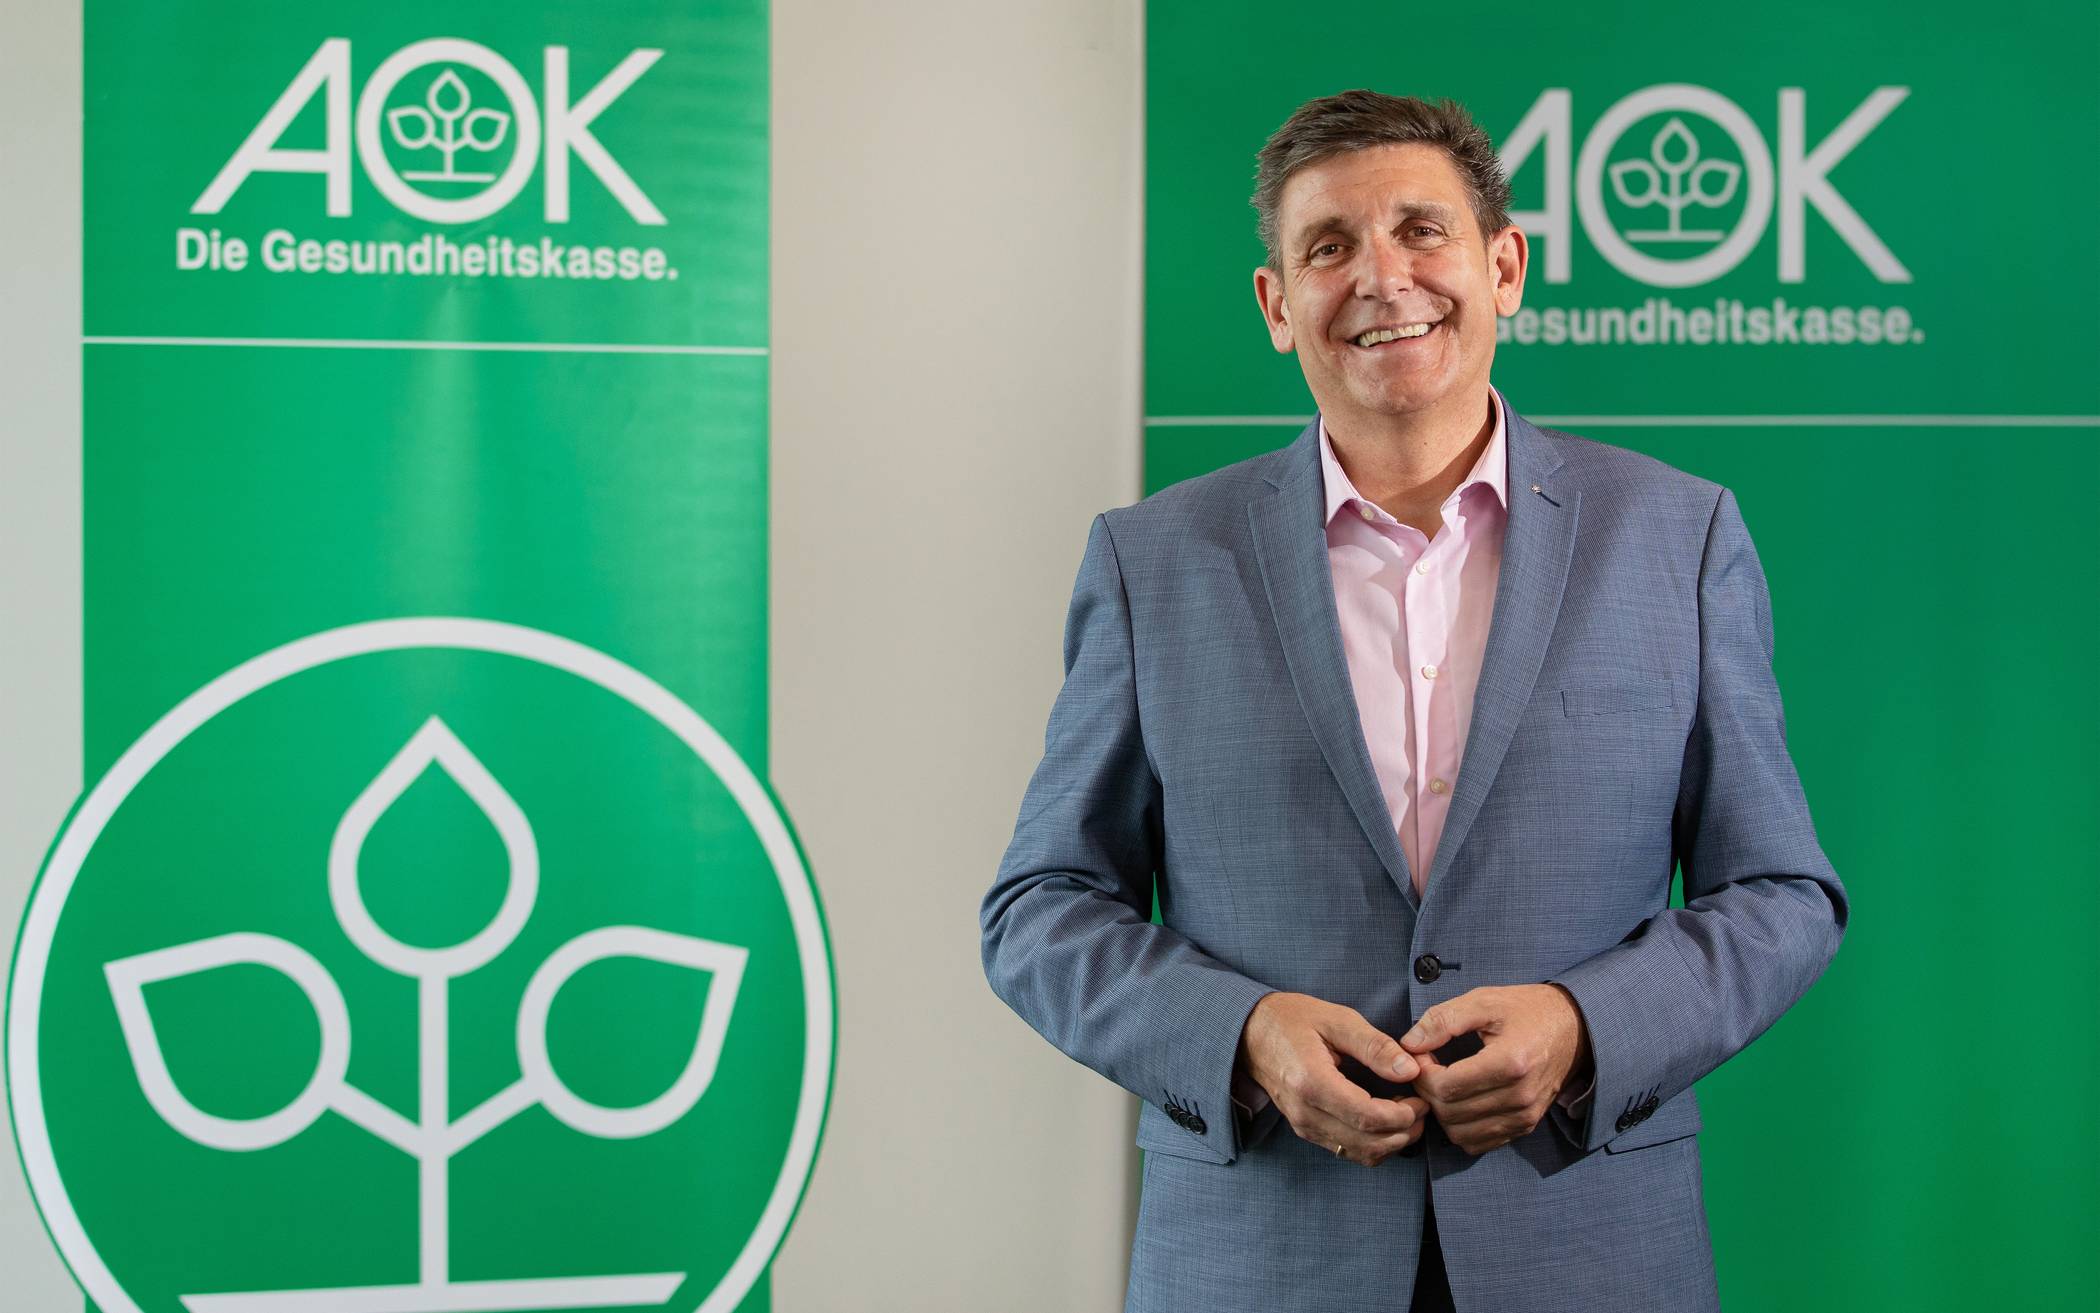  Oliver Hartmann ist Regionaldirektor der AOK Rheinland/Hamburg in Wuppertal-Remscheid-Solingen. 